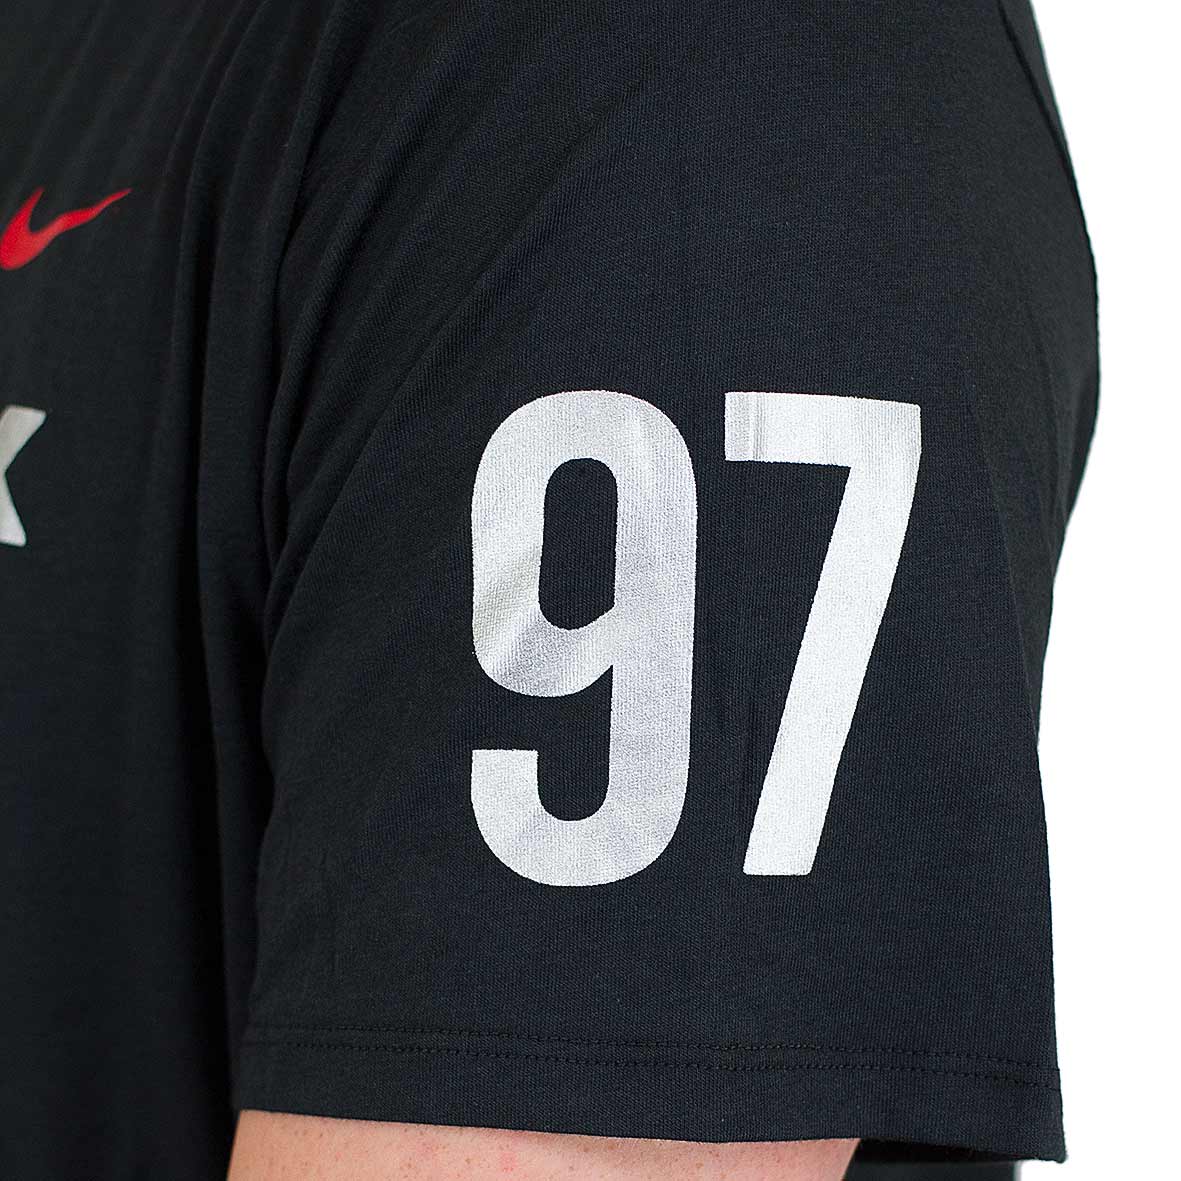 ☆ Nike T-Shirt Air Max 97 schwarz/rot - hier bestellen!